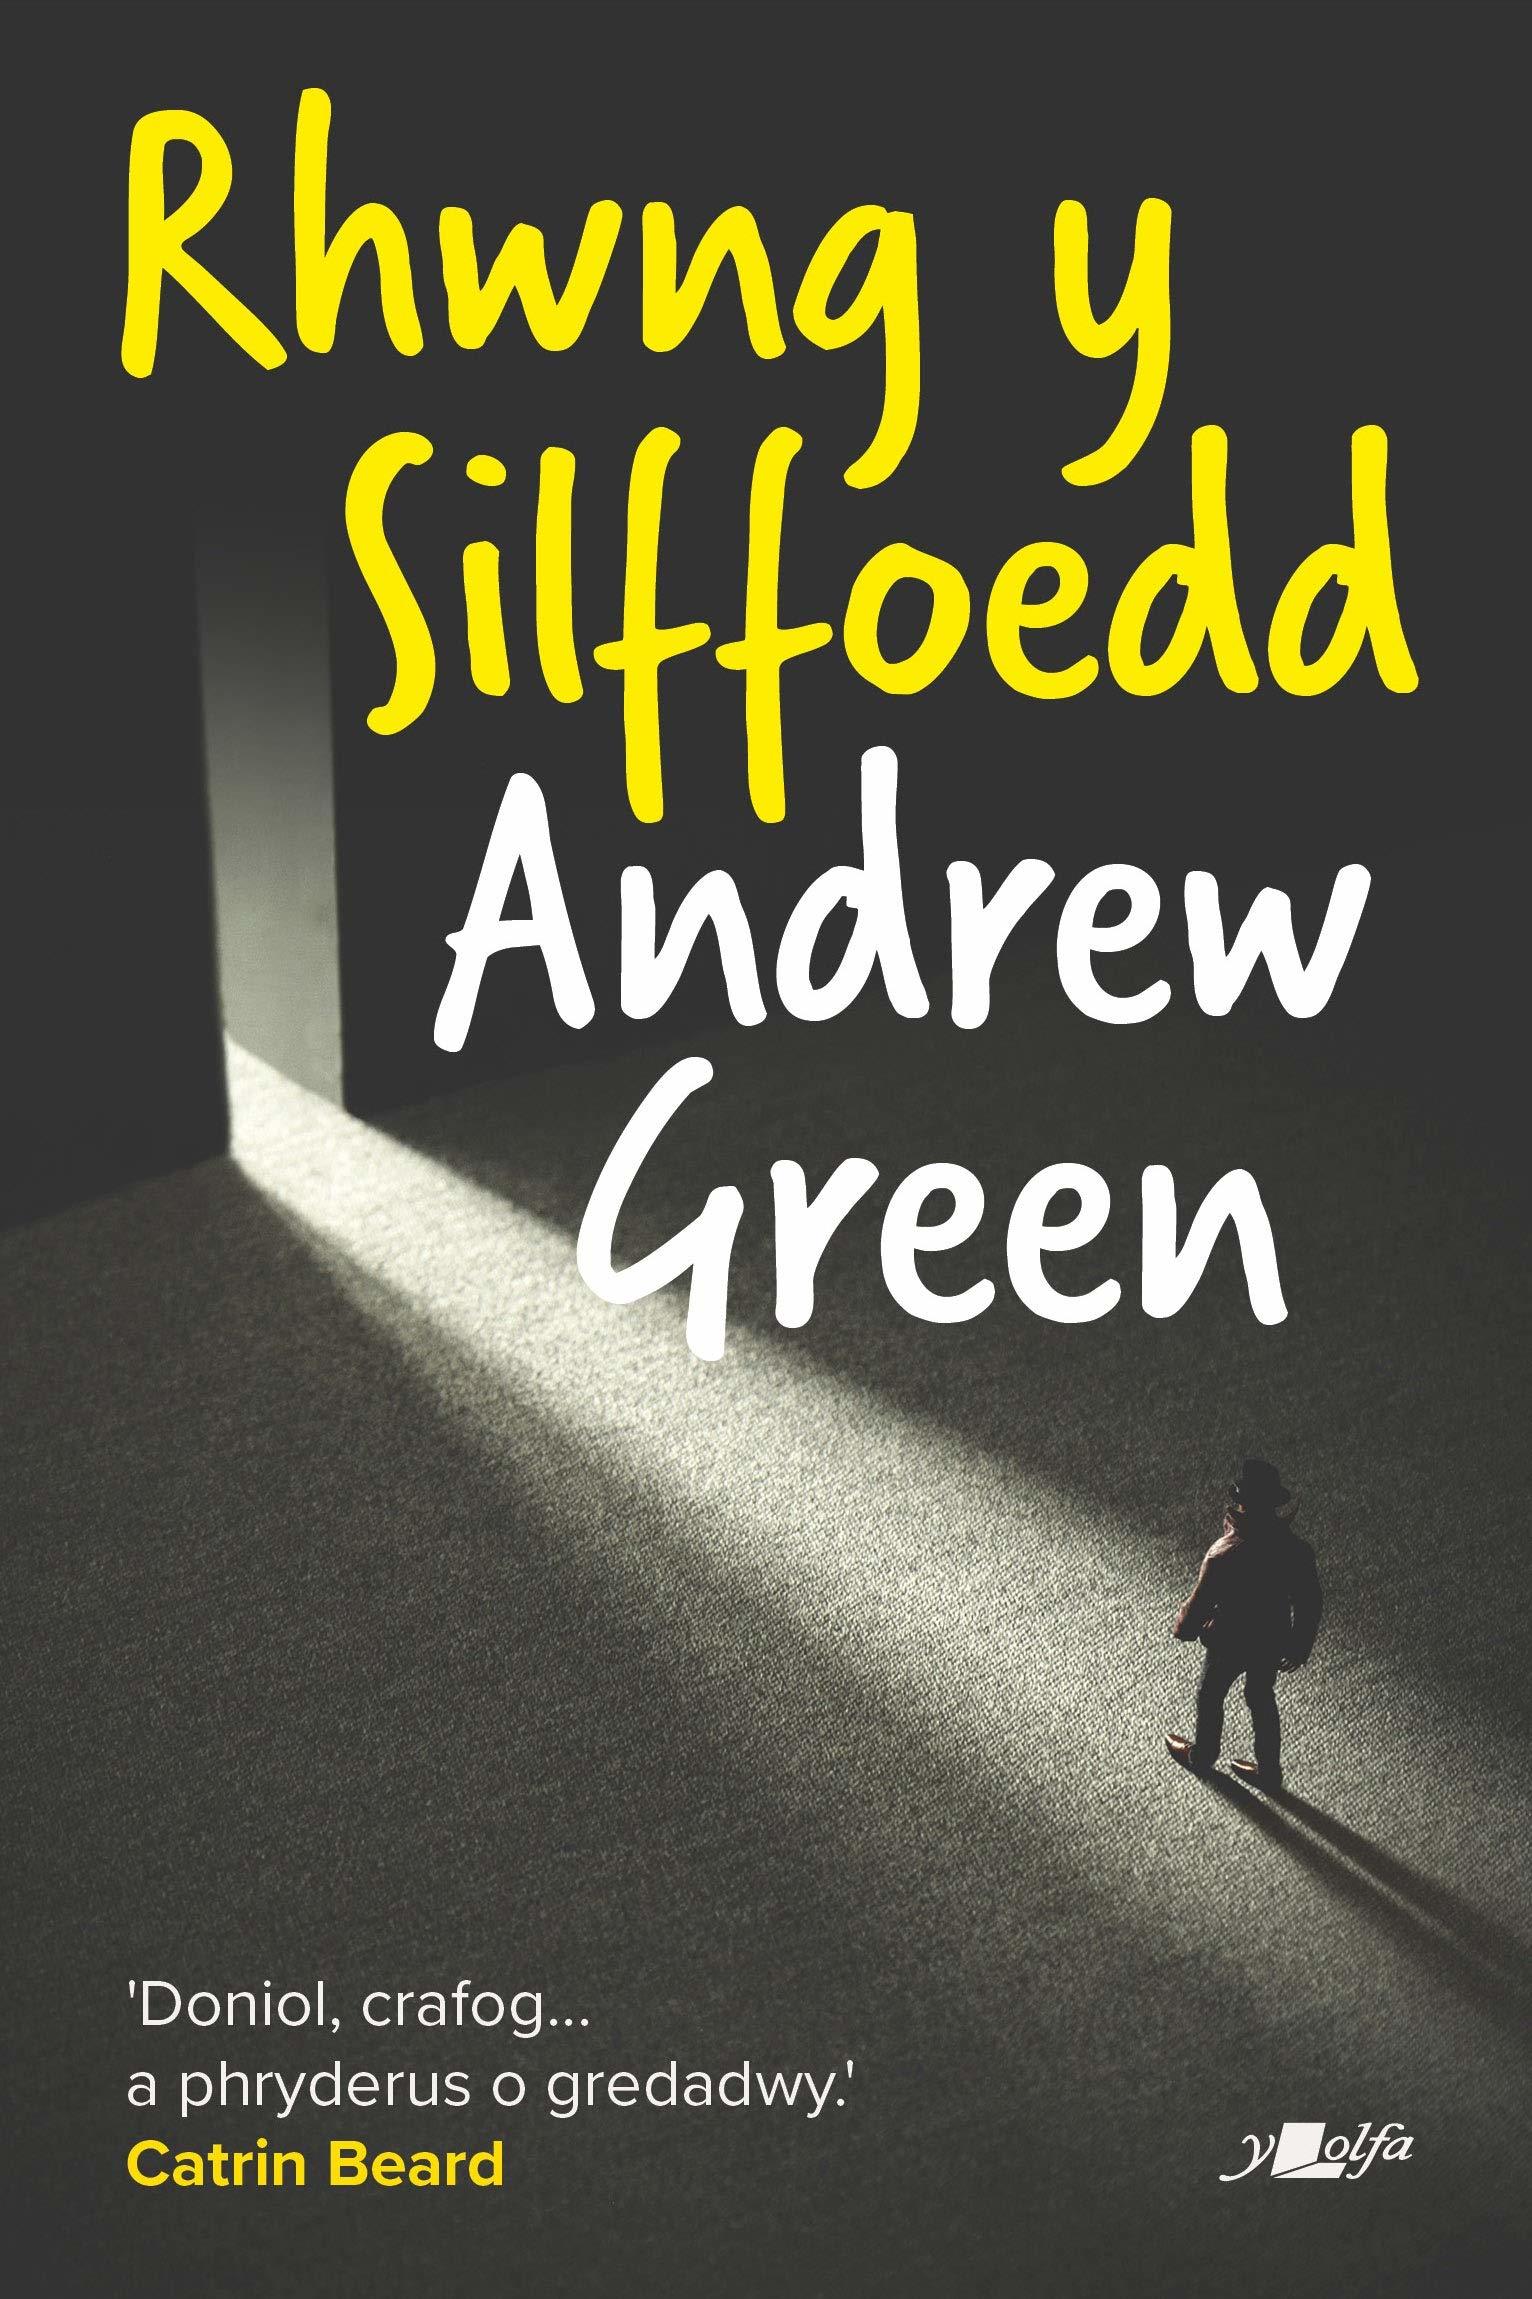 Rhwng y Silffoedd by Andrew Green